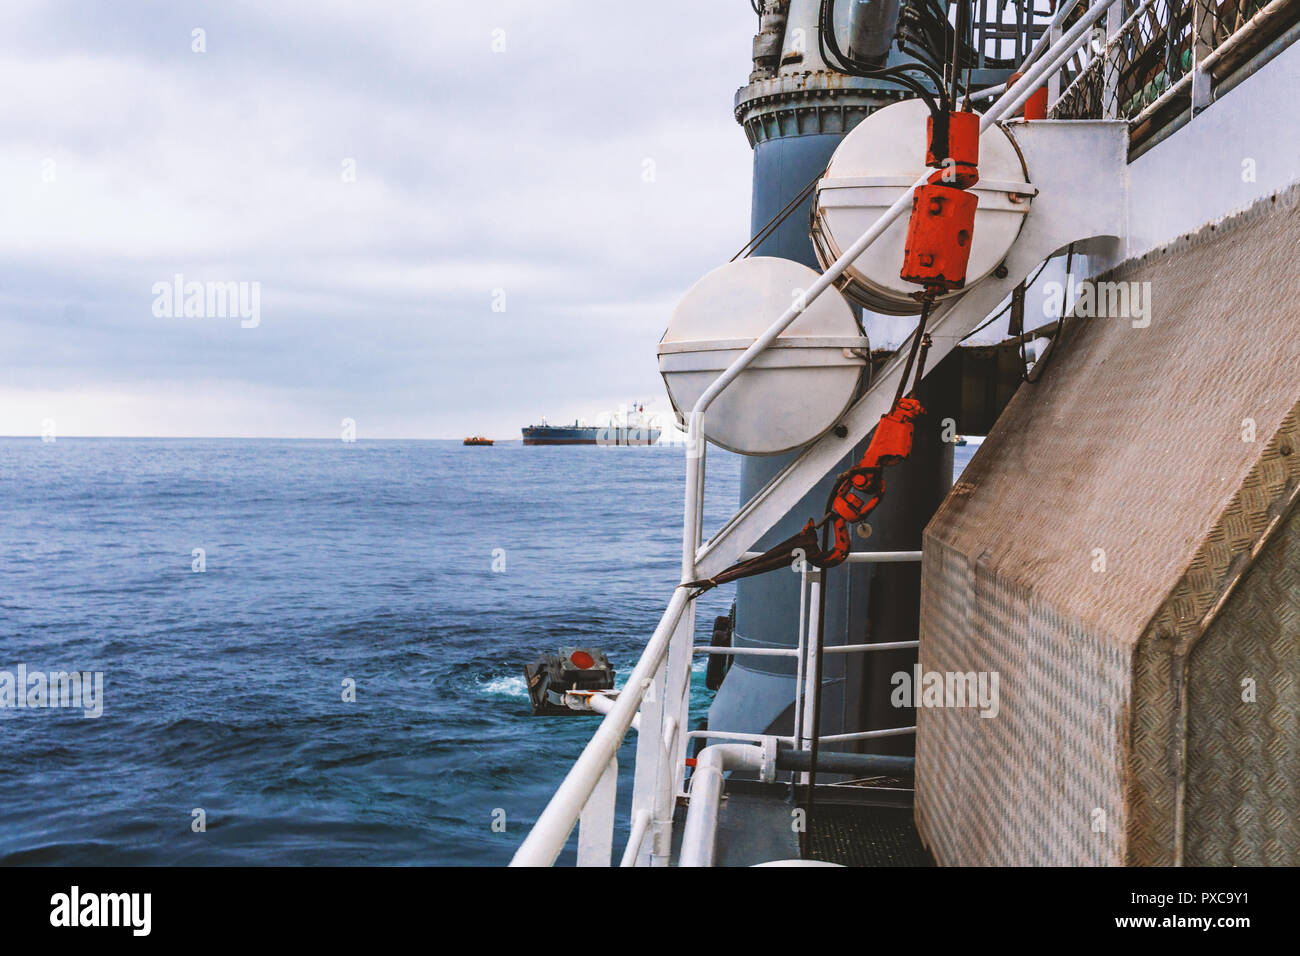 Vista del océano desde un barco o buque. LSA equipo salvavidas está en cubierta Foto de stock